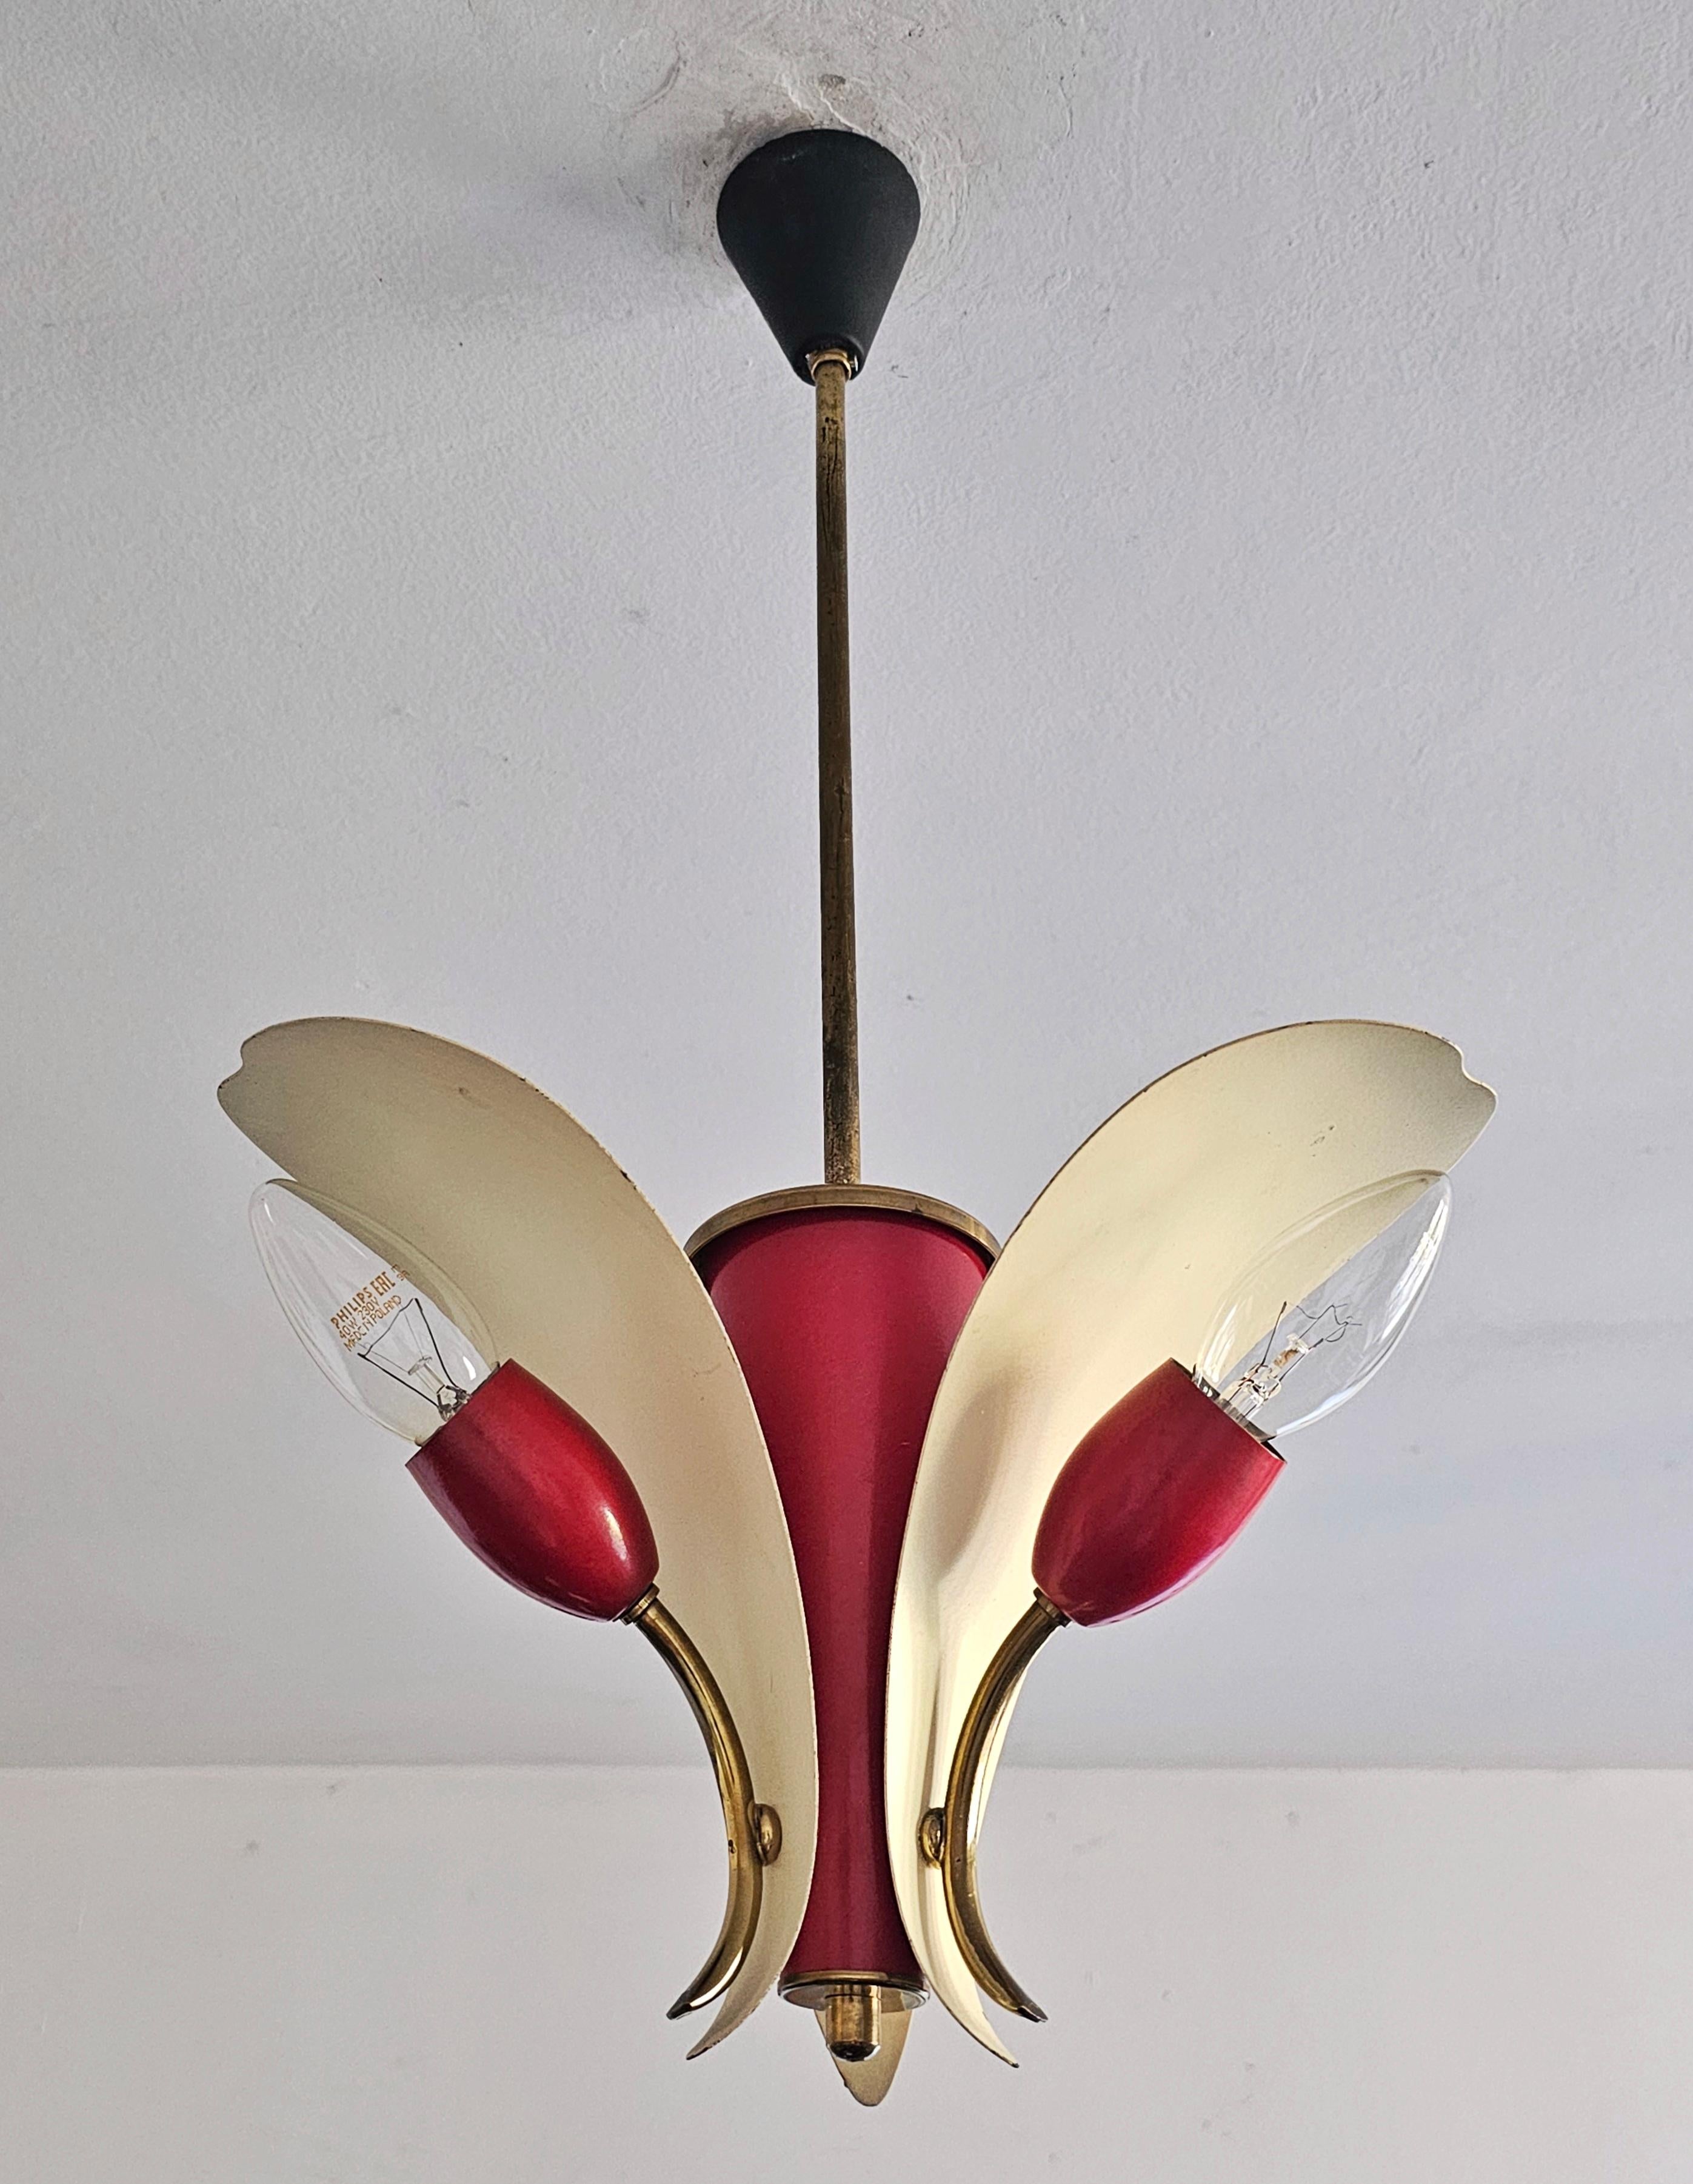 Vous trouverez dans cette annonce une très rare lampe suspendue ou un petit lustre de style moderne du milieu du siècle conçu par Fog et Morup. Il présente un design magnifique et élégant qui rappelle une fleur dans une combinaison de rouge et de